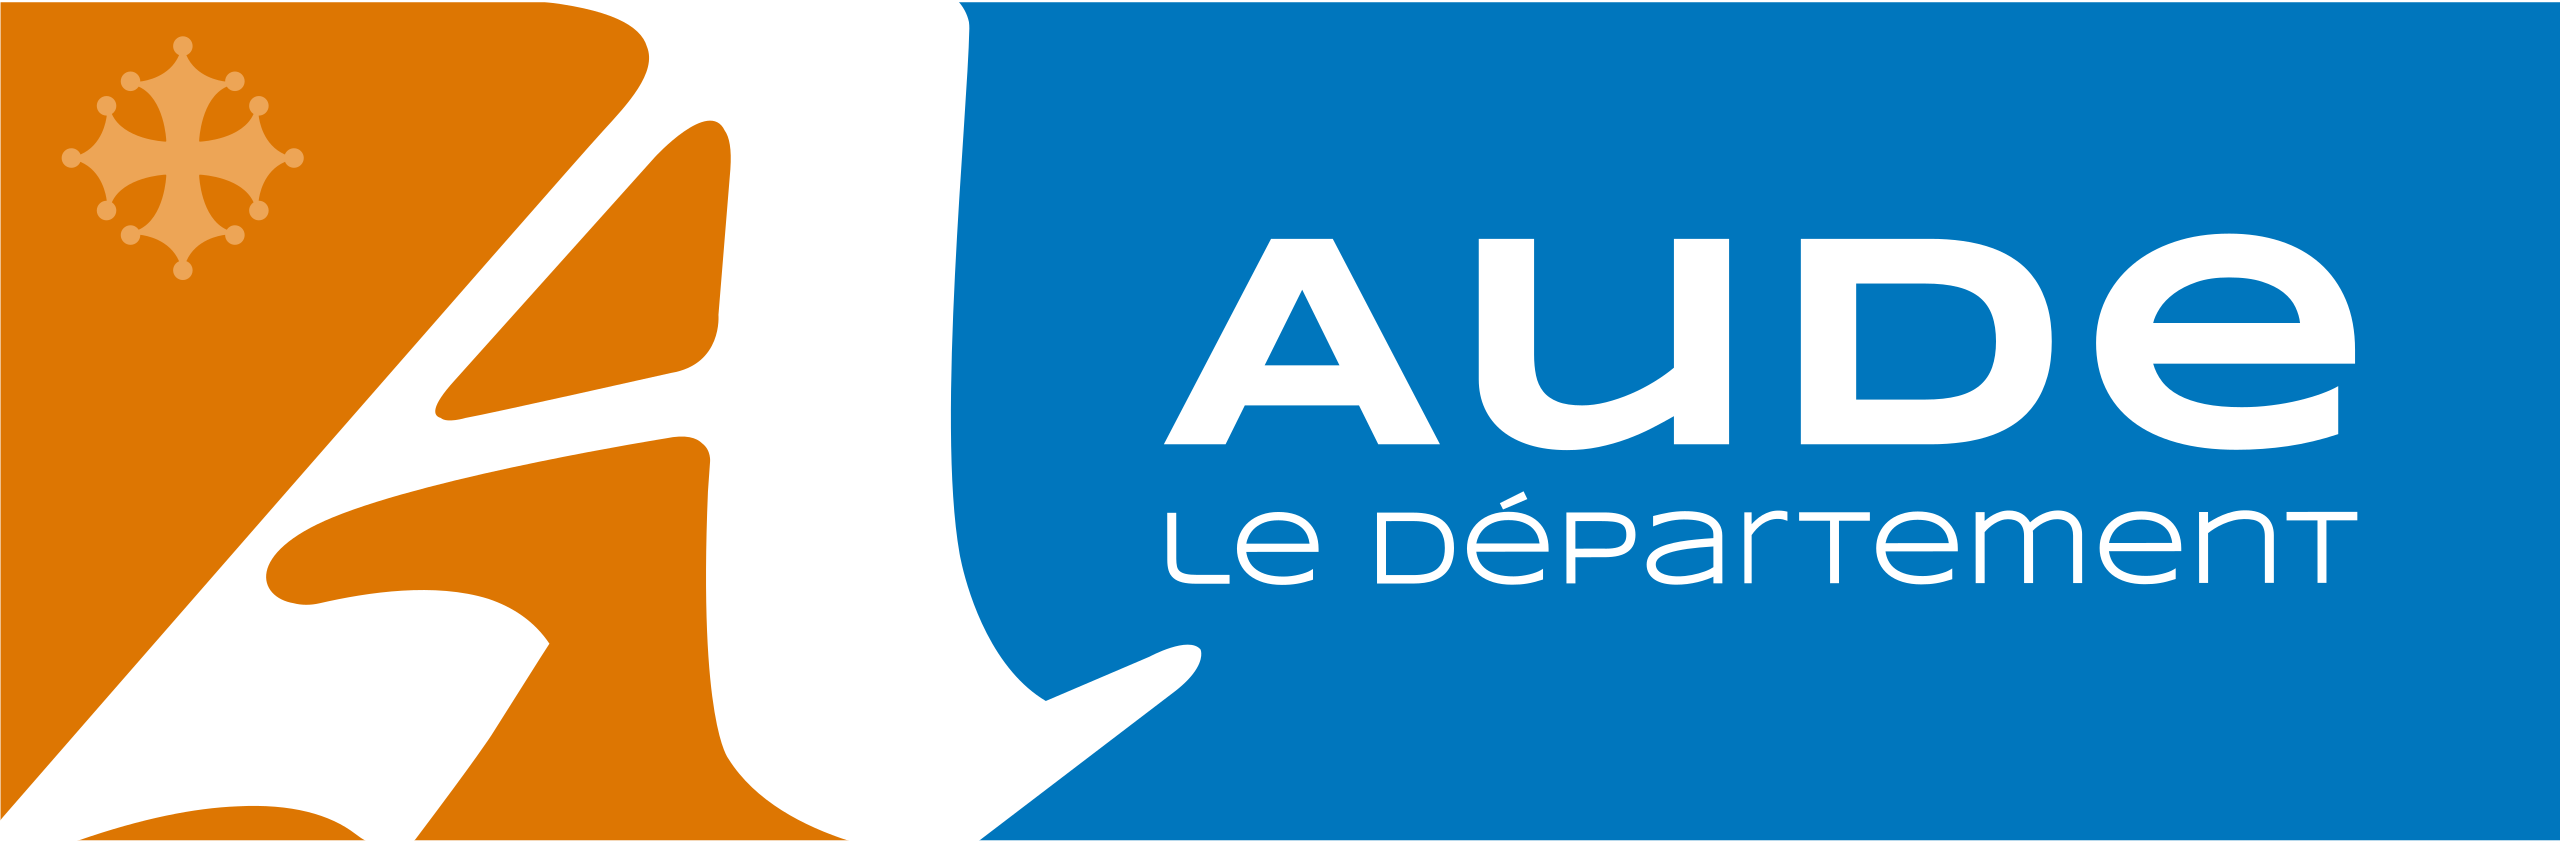 Département Aude